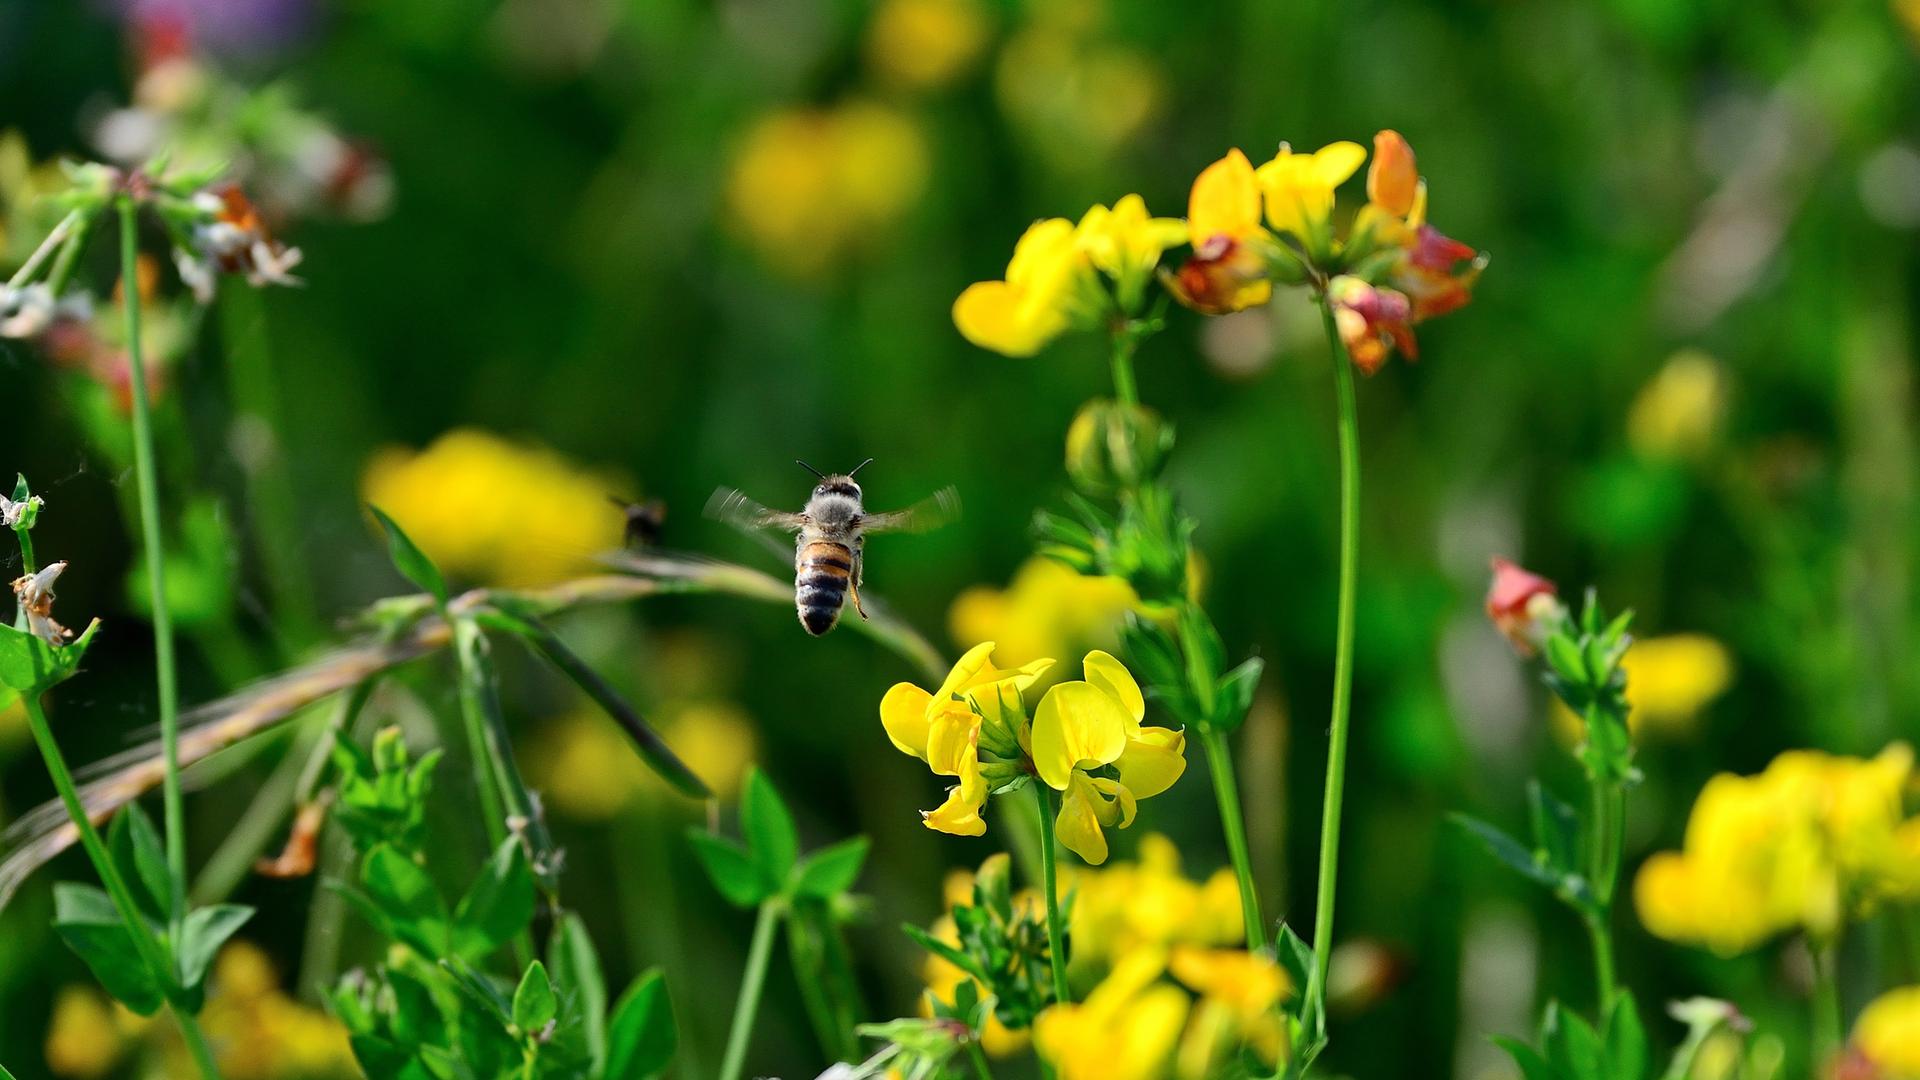 Naturschutz: Wildblumen auf einer Heidelberger Brachfläche. Hier haben sich inzwischen viele Wildblumen und Kräuterpflanzen angesiedelt. Sie locken zahlreiche Insekten und damit auch Vögel an. Dennoch schreitet das Insektensterben voran. Im Bild eine Honigbiene im Flug.